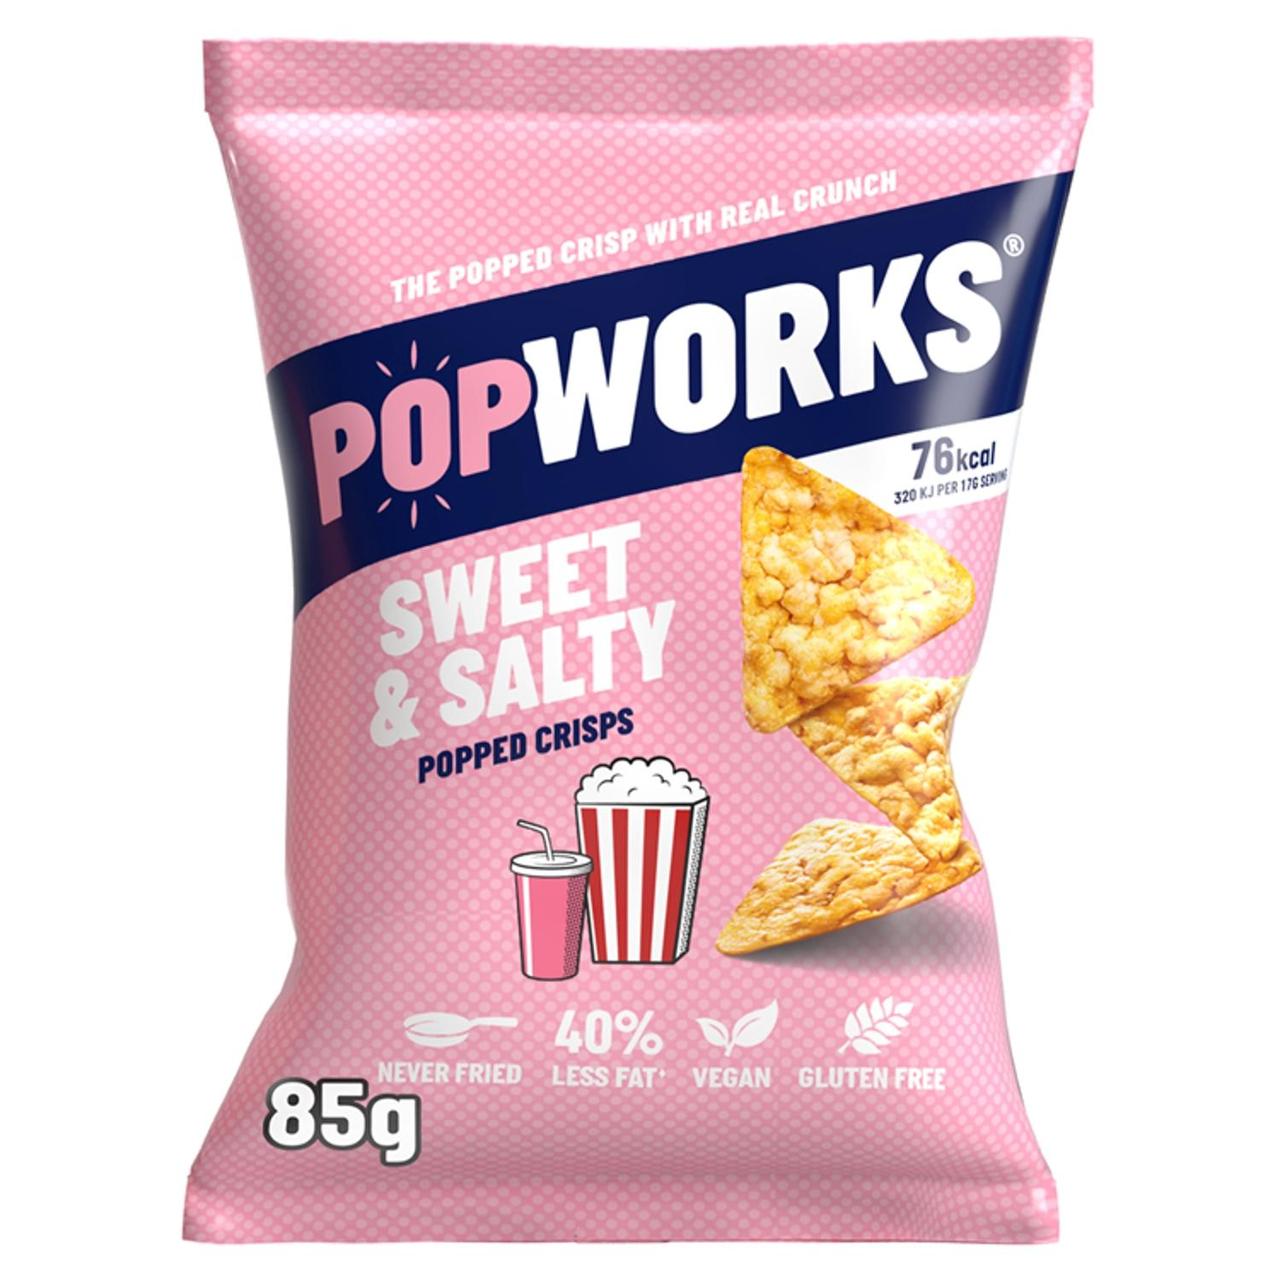 Popworks Sweet and Salty 85g